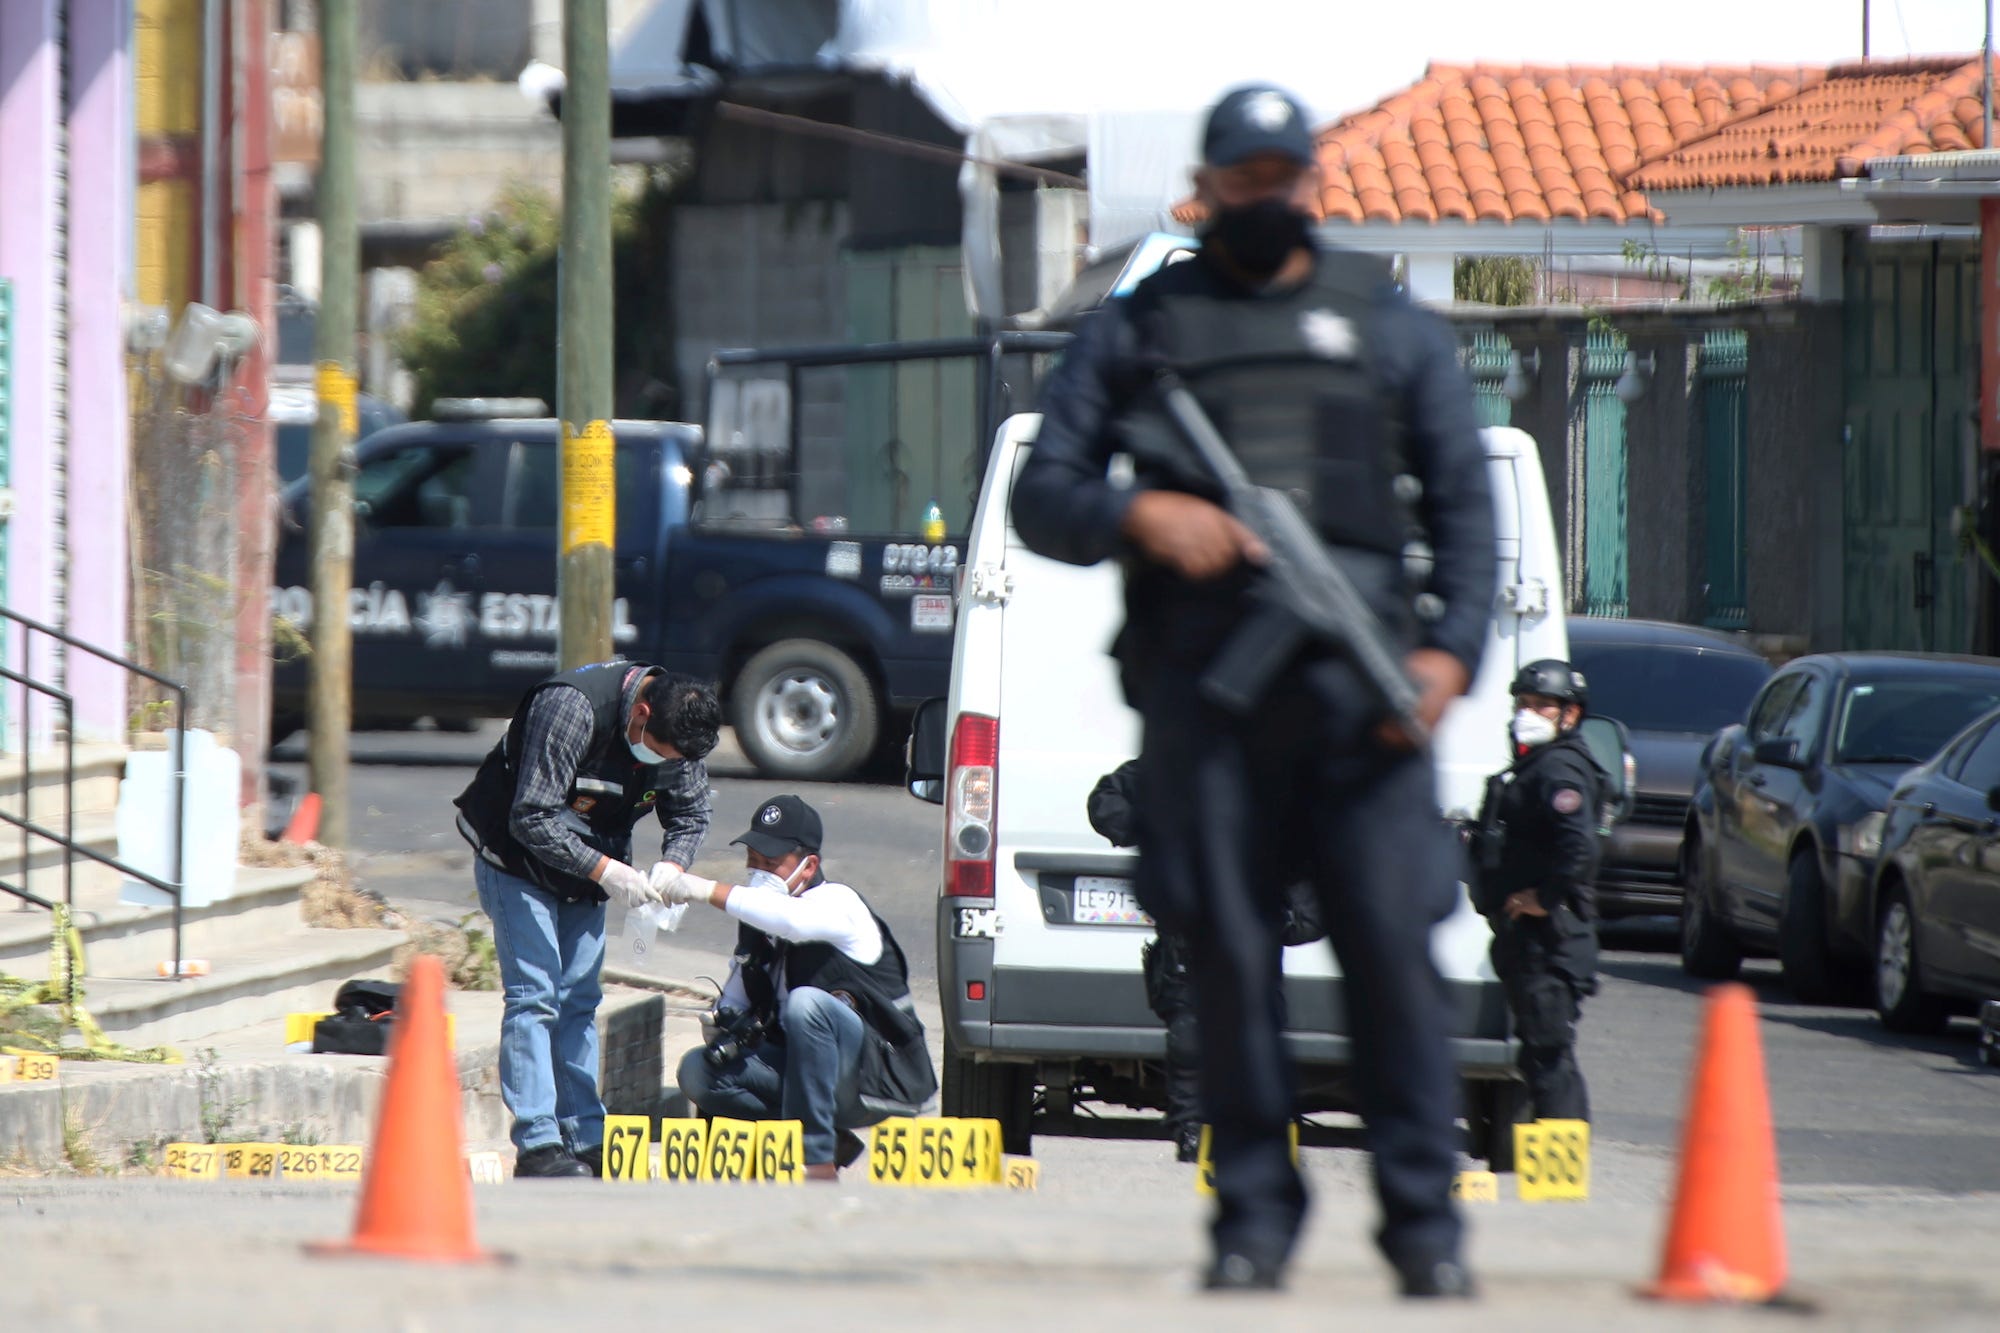 Police homicide crime scene in Mexico